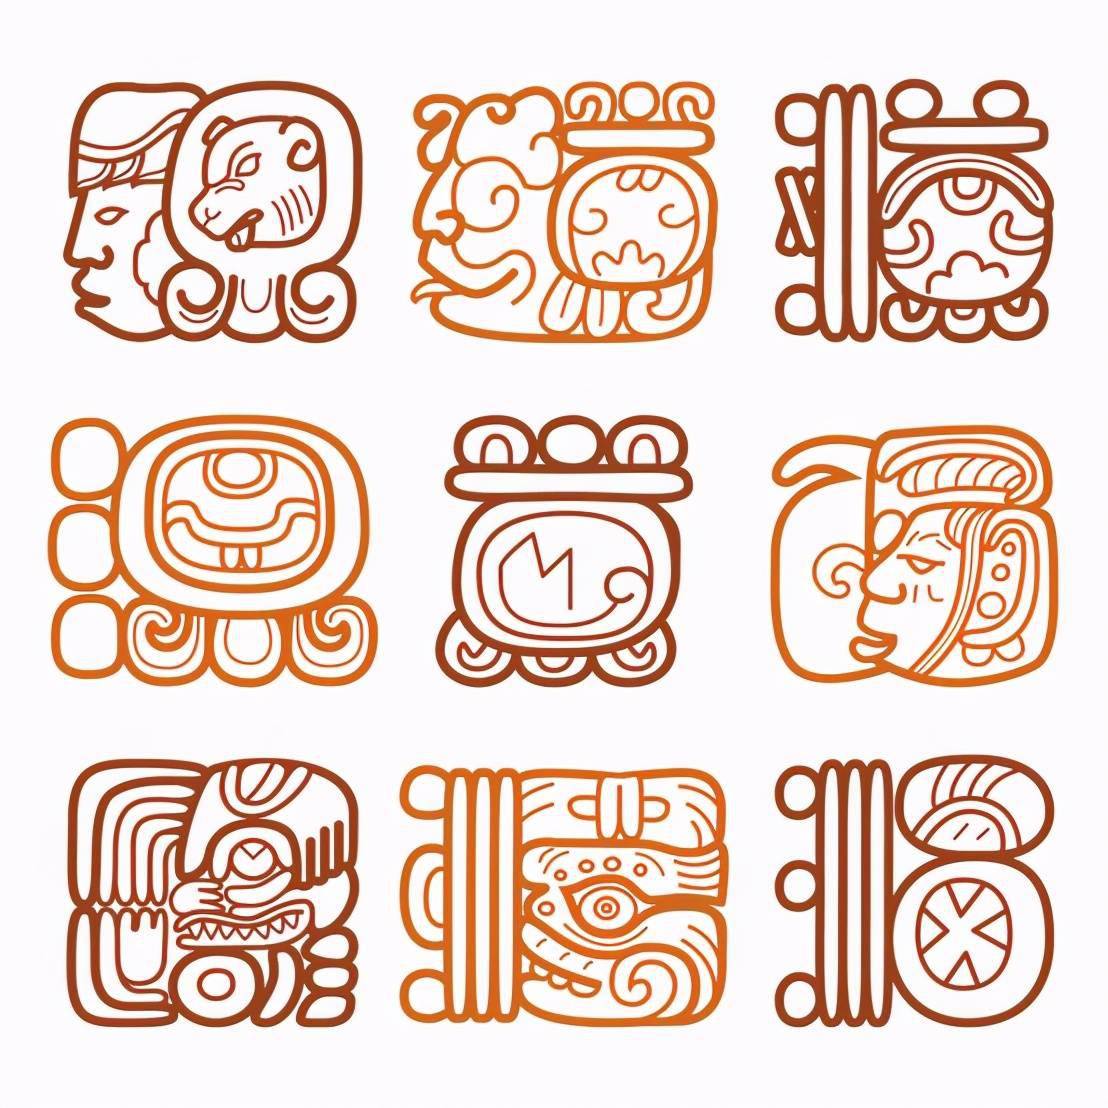 的文字符号定义为二维文字,那么玛雅人创造的文字则属于三维文字